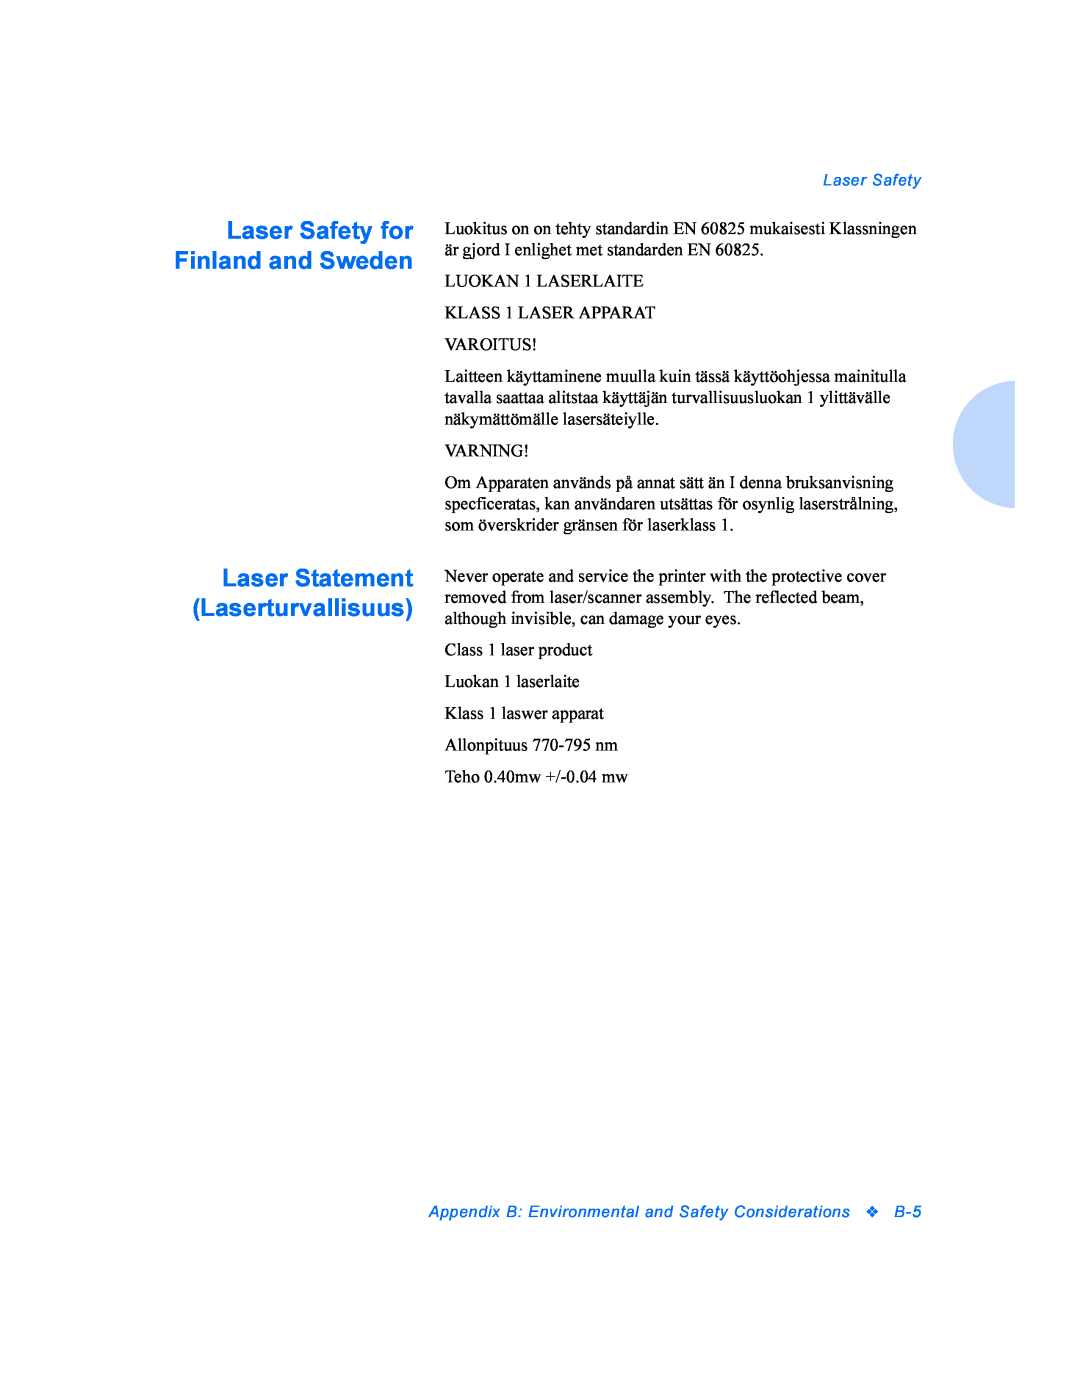 Xerox DocuPrint P8ex manual Laser Safety for Finland and Sweden, Laser Statement Laserturvallisuus 